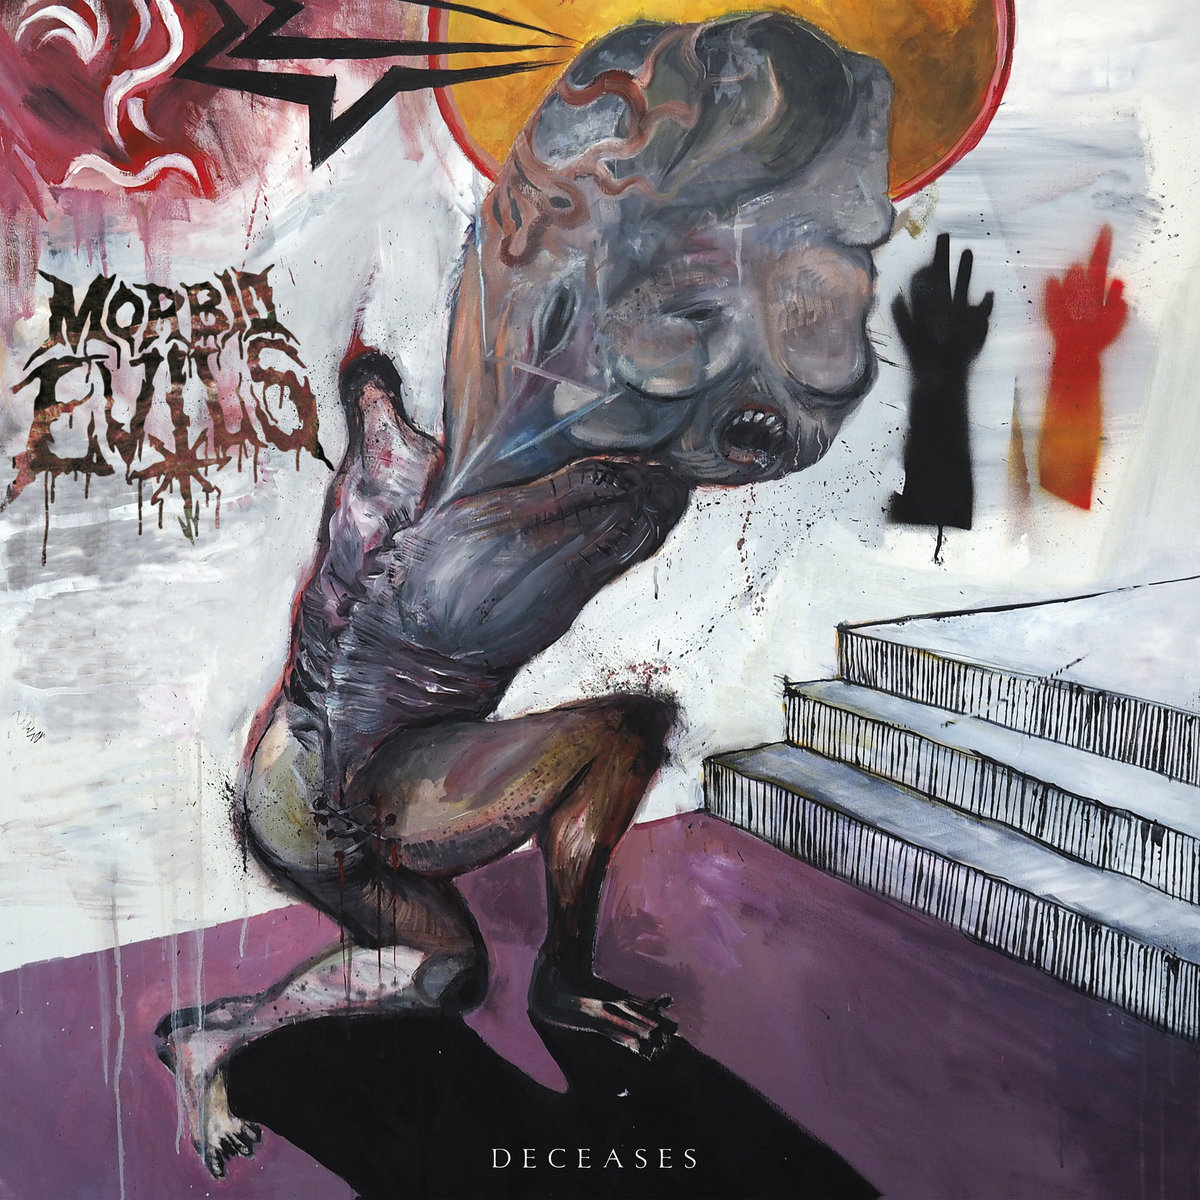 MORBID EVILS (con Keijo Niinimaa de Rotten Sound) nuevo disco “Deceases”